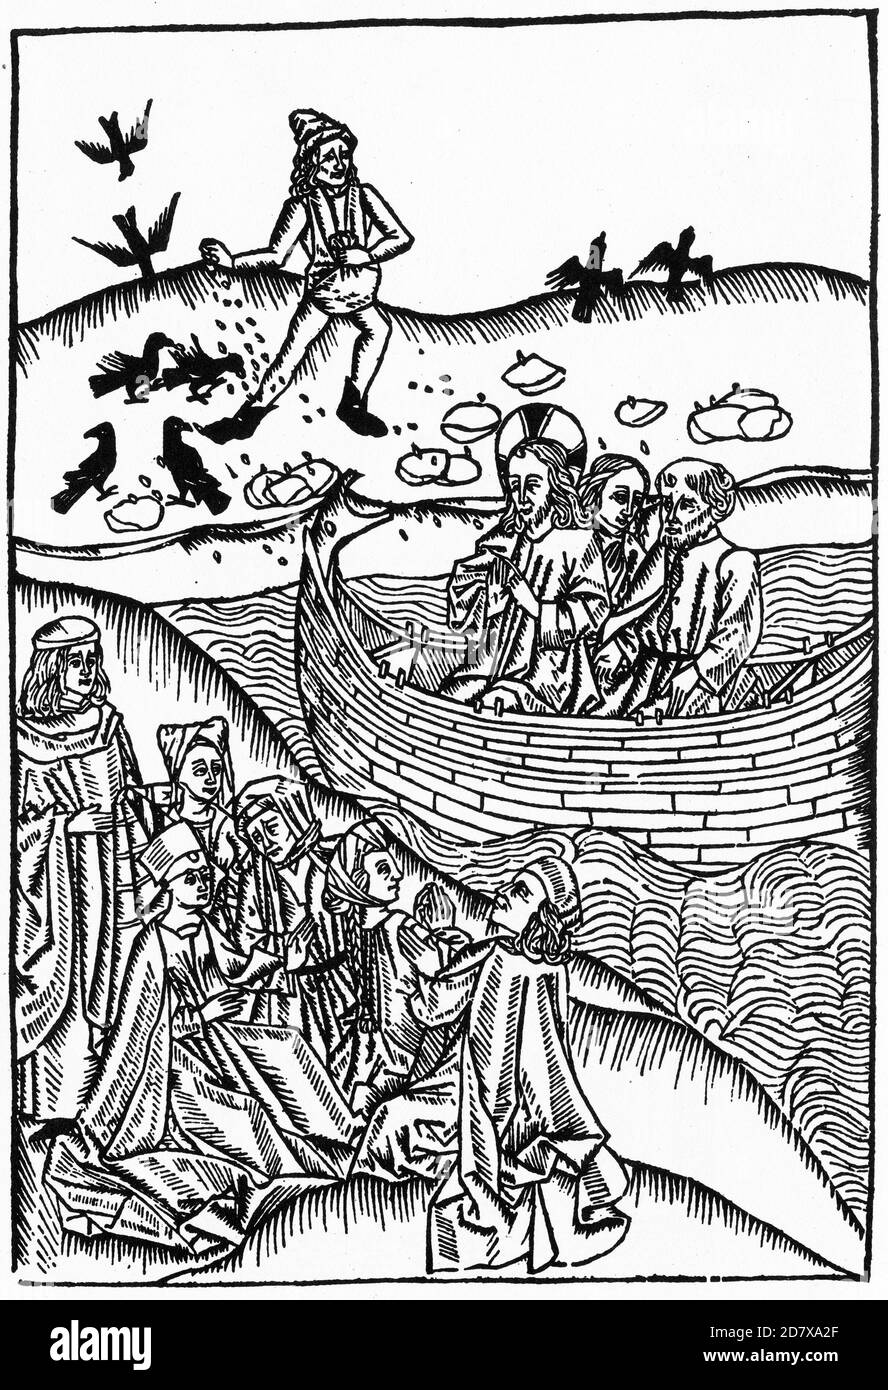 La coupe de bois médiévale de Jésus prêchant du navire, tandis que la moins-forte sème la semence en arrière-plan, probablement à partir des années 1400 Banque D'Images